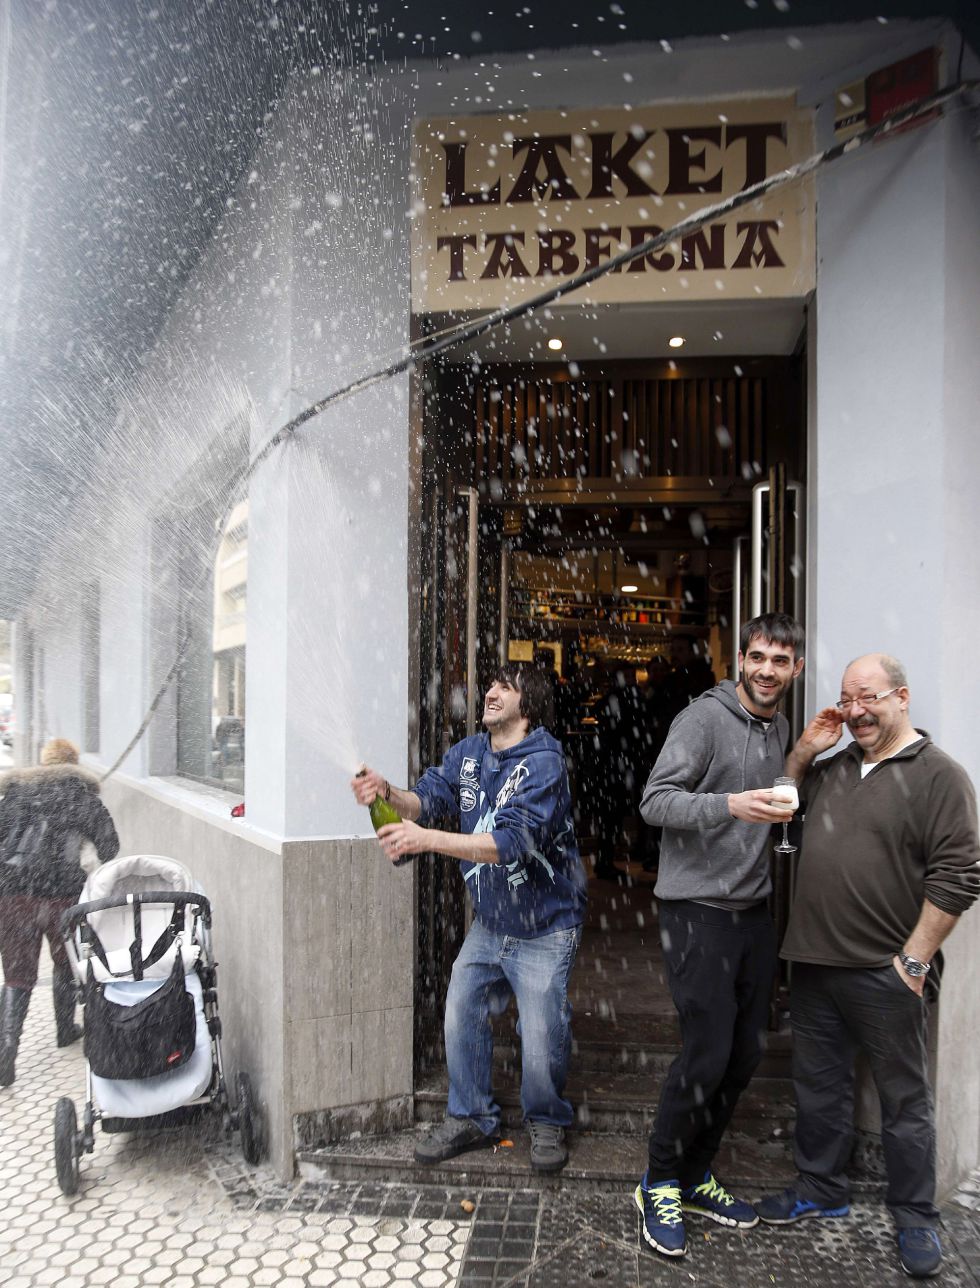 El bar Laket, en Pasaia (Guipúzcoa), ha repartido diez millones de euros con el Gordo del Sorteo del Niñ